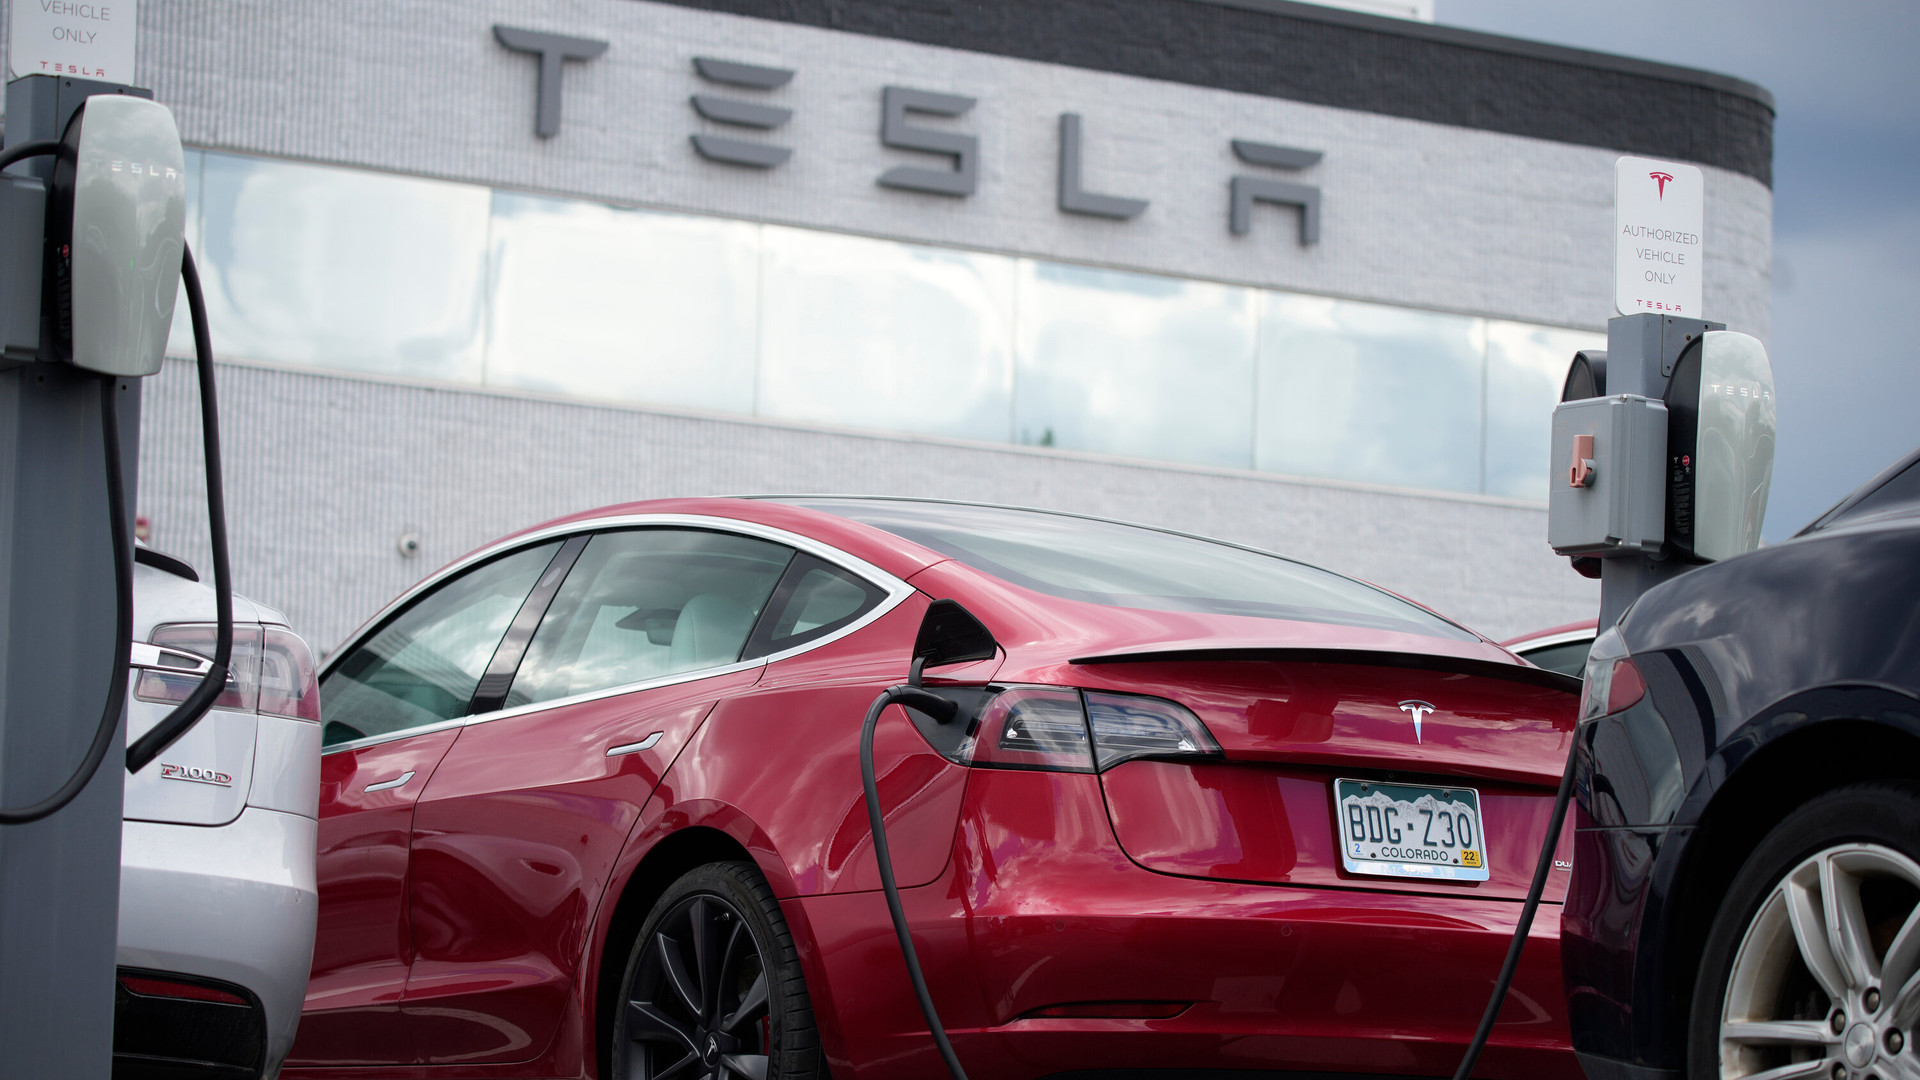 Chiêu giảm giá xe điện của Tesla bắt đầu phản tác dụng, các hãng xe chạy theo cẩn thận nhận 'trái đắng' - Ảnh 1.